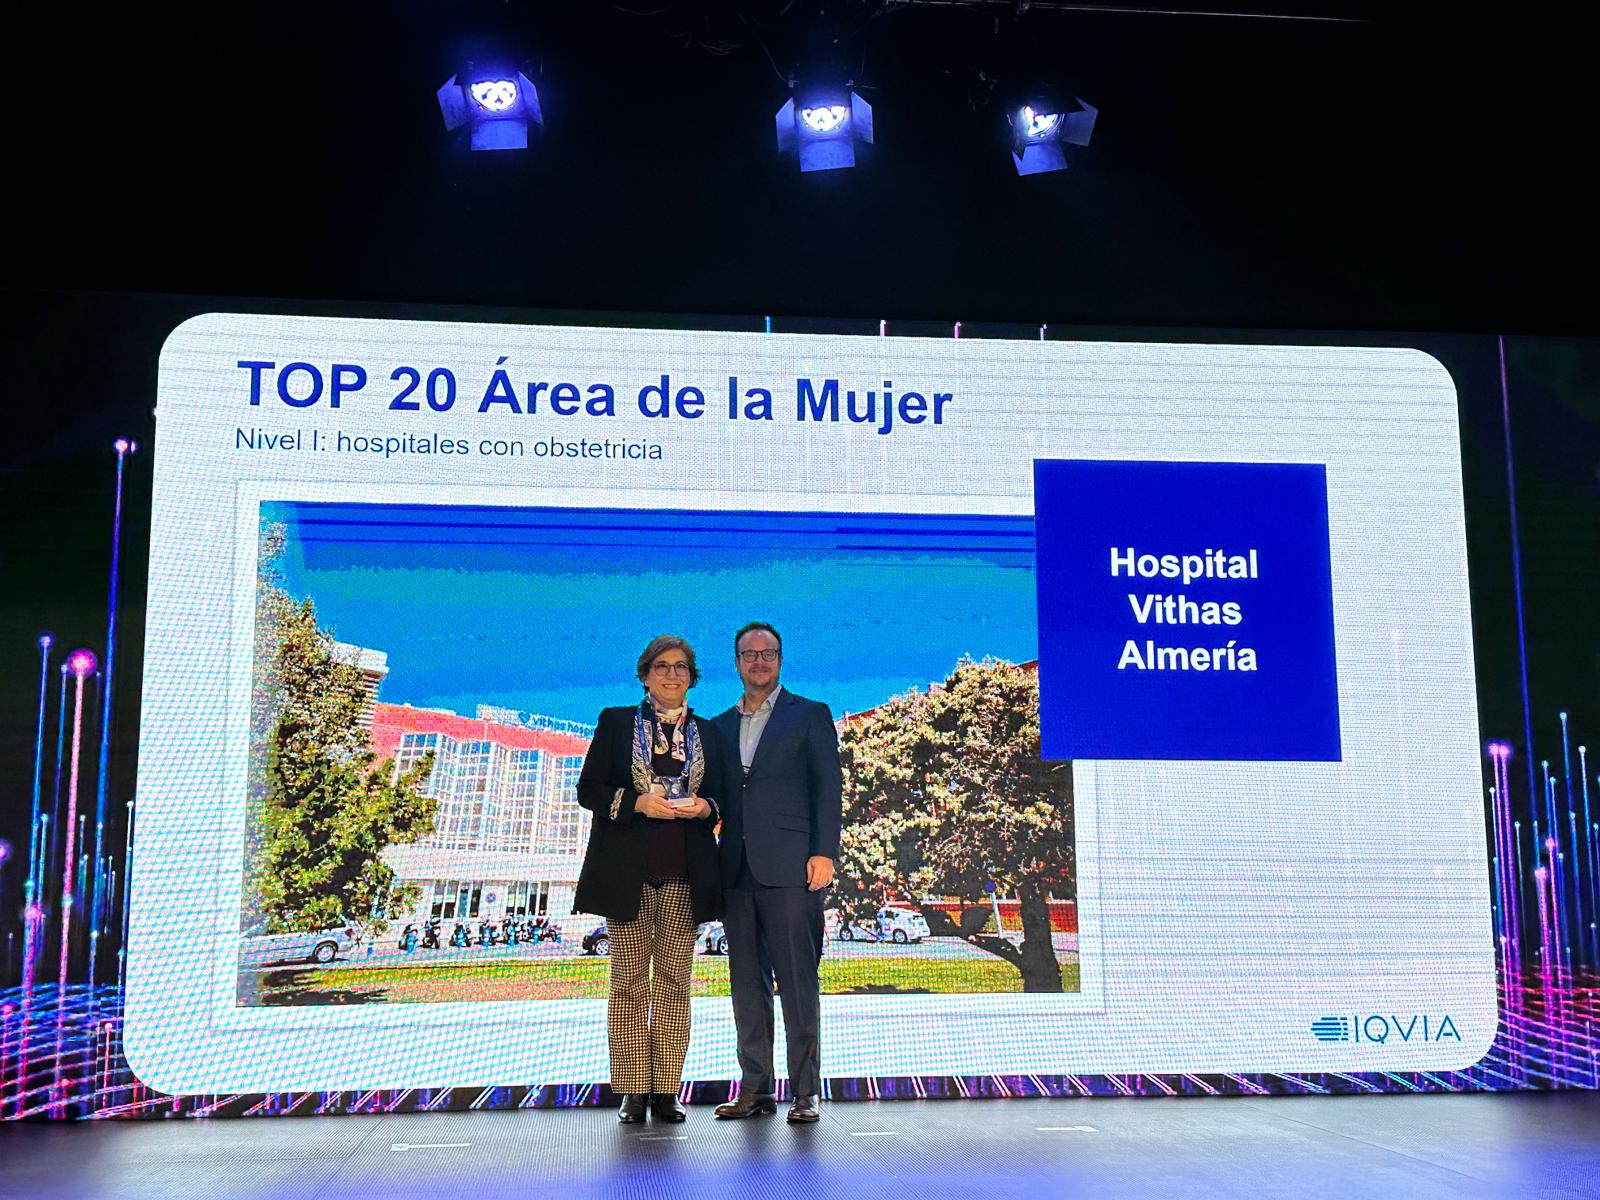 El Hospital Vithas Almería, premio TOP20 en el Área de la Mujer